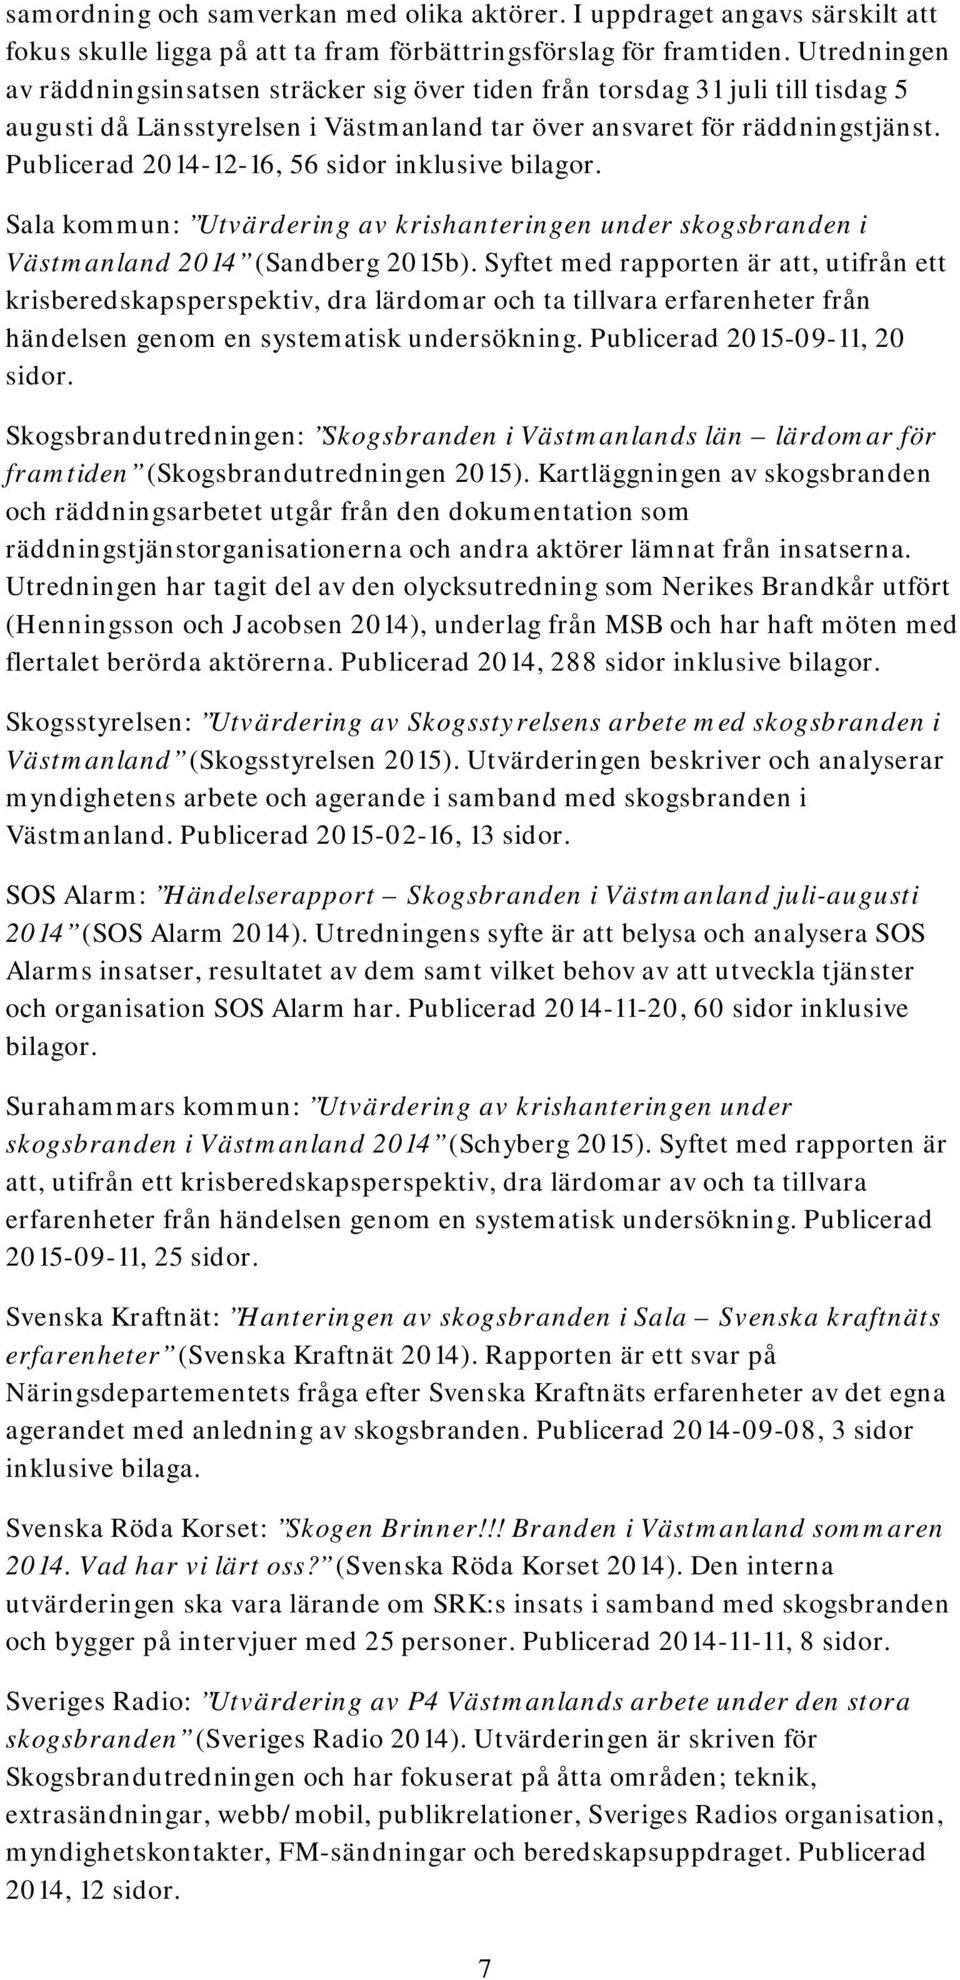 Publicerad 2014-12-16, 56 sidor inklusive bilagor. Sala kommun: Utvärdering av krishanteringen under skogsbranden i Västmanland 2014 (Sandberg 2015b).